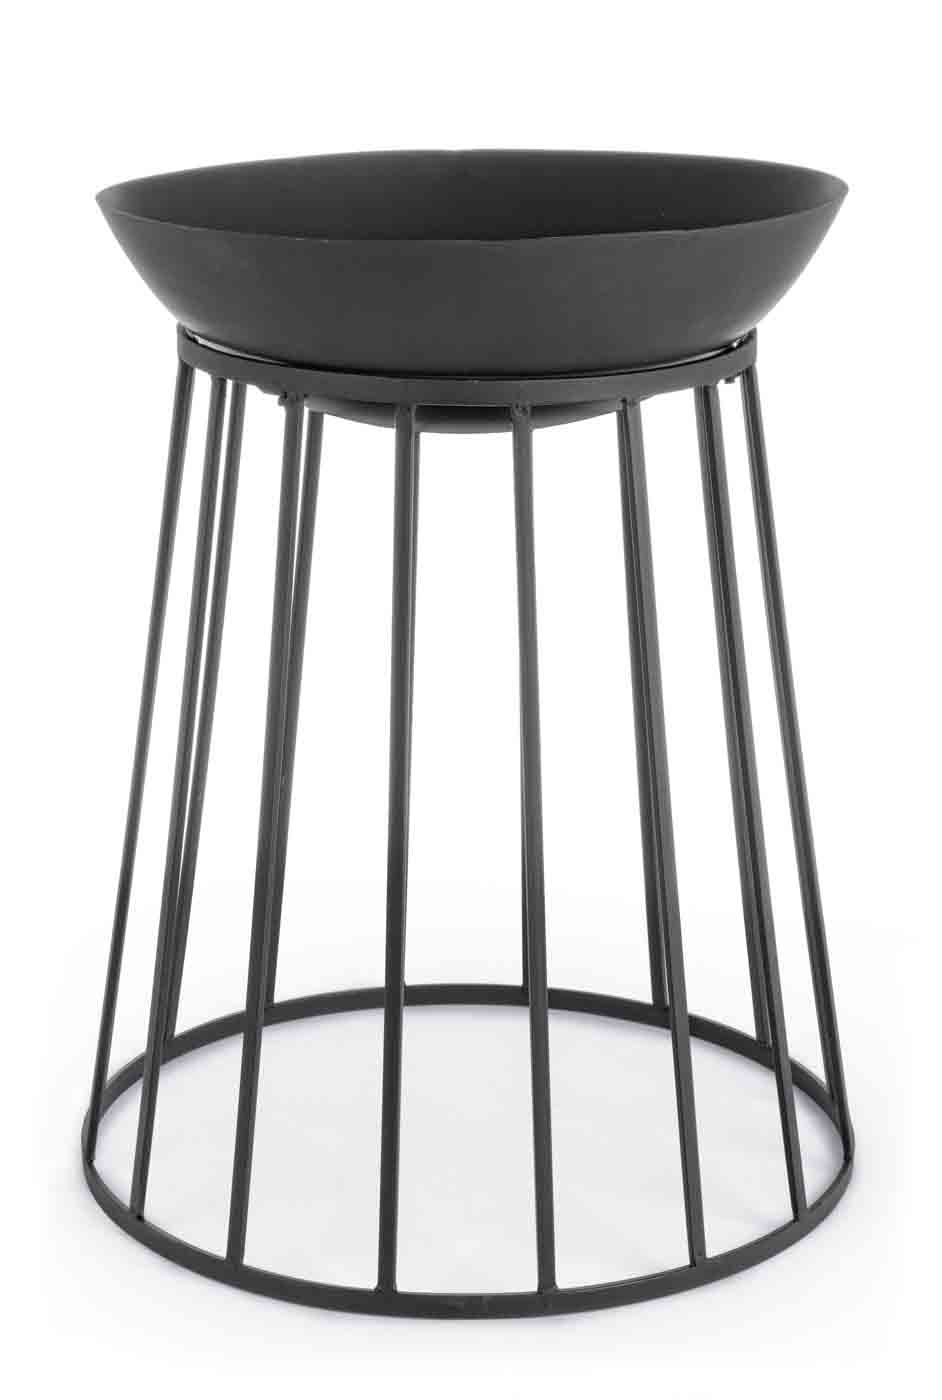 Stilvolle Feuerschale Fuoco aus Hitzebeständigen Stahl in einem schwarzen Farbton